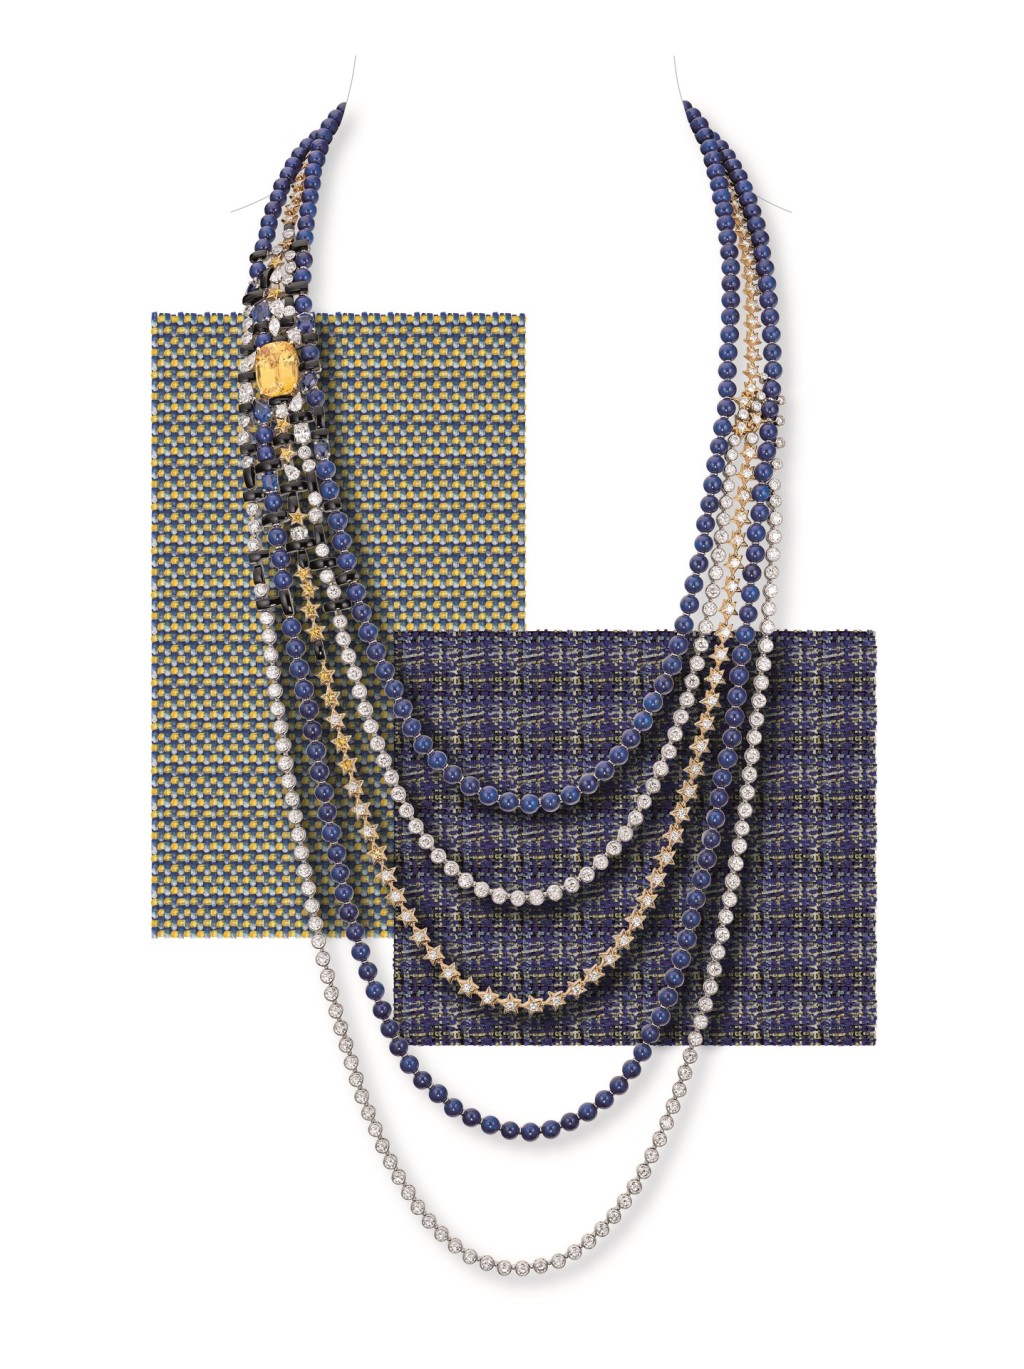 Tweed Etoilé黄金及白金钻石项链，镶嵌黄色蓝宝石、青金石及玛瑙，单颗黄色蓝宝石重约14.71卡。